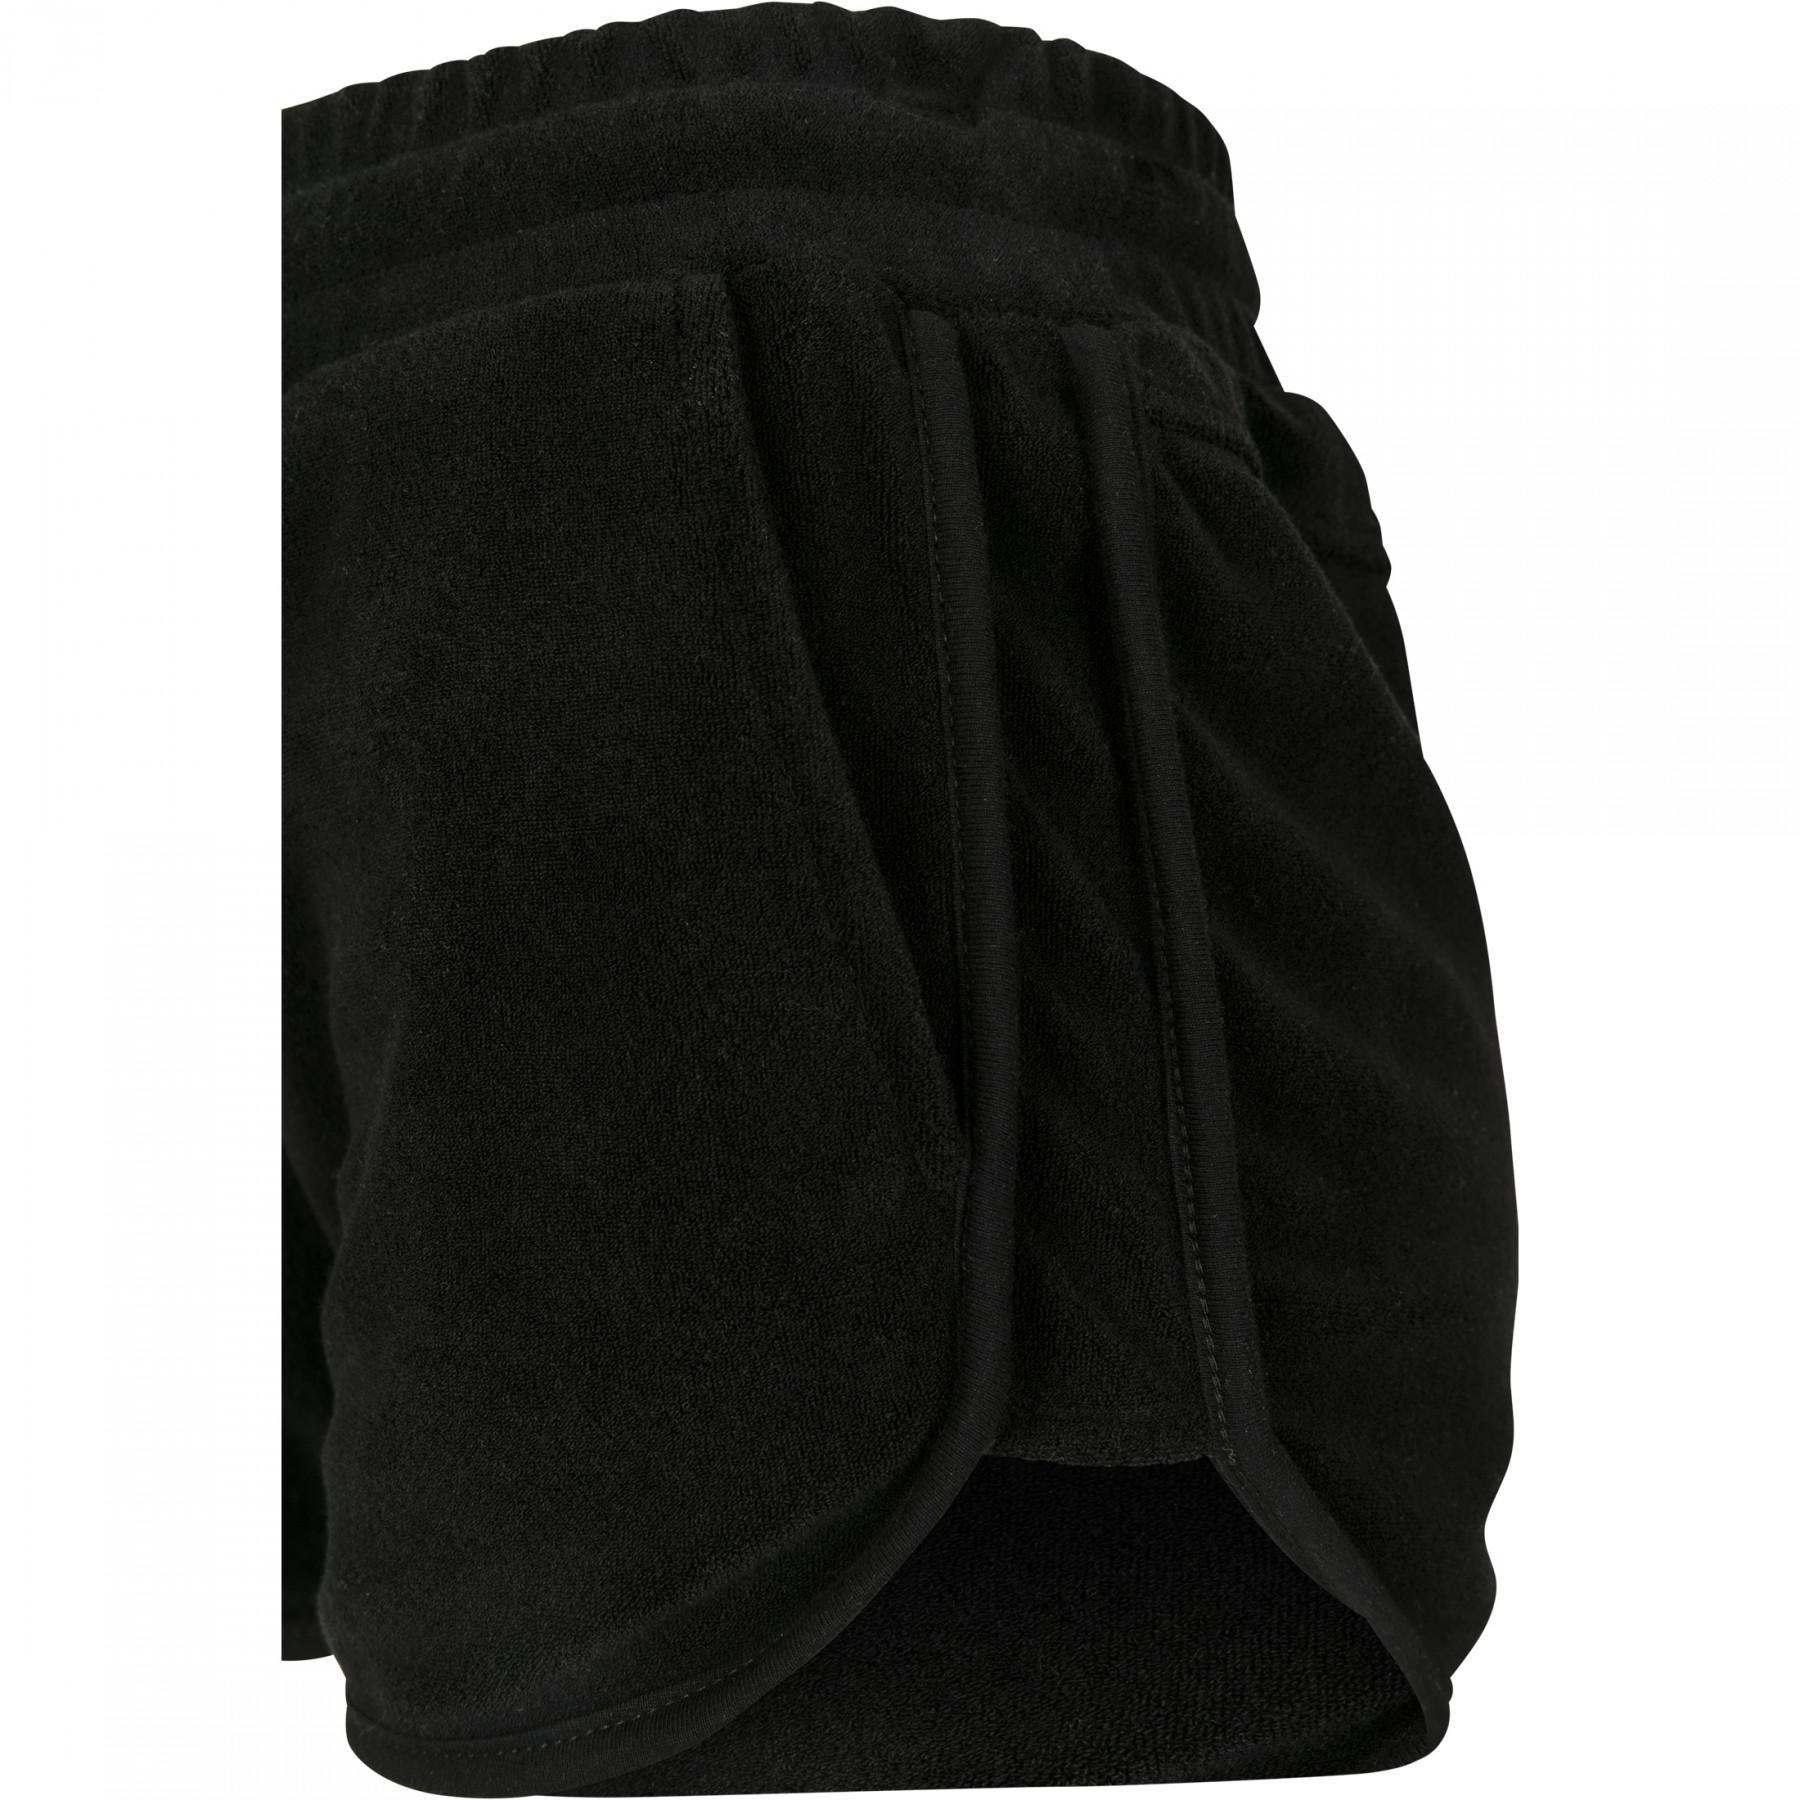 Urban Classic towel hot women's shorts